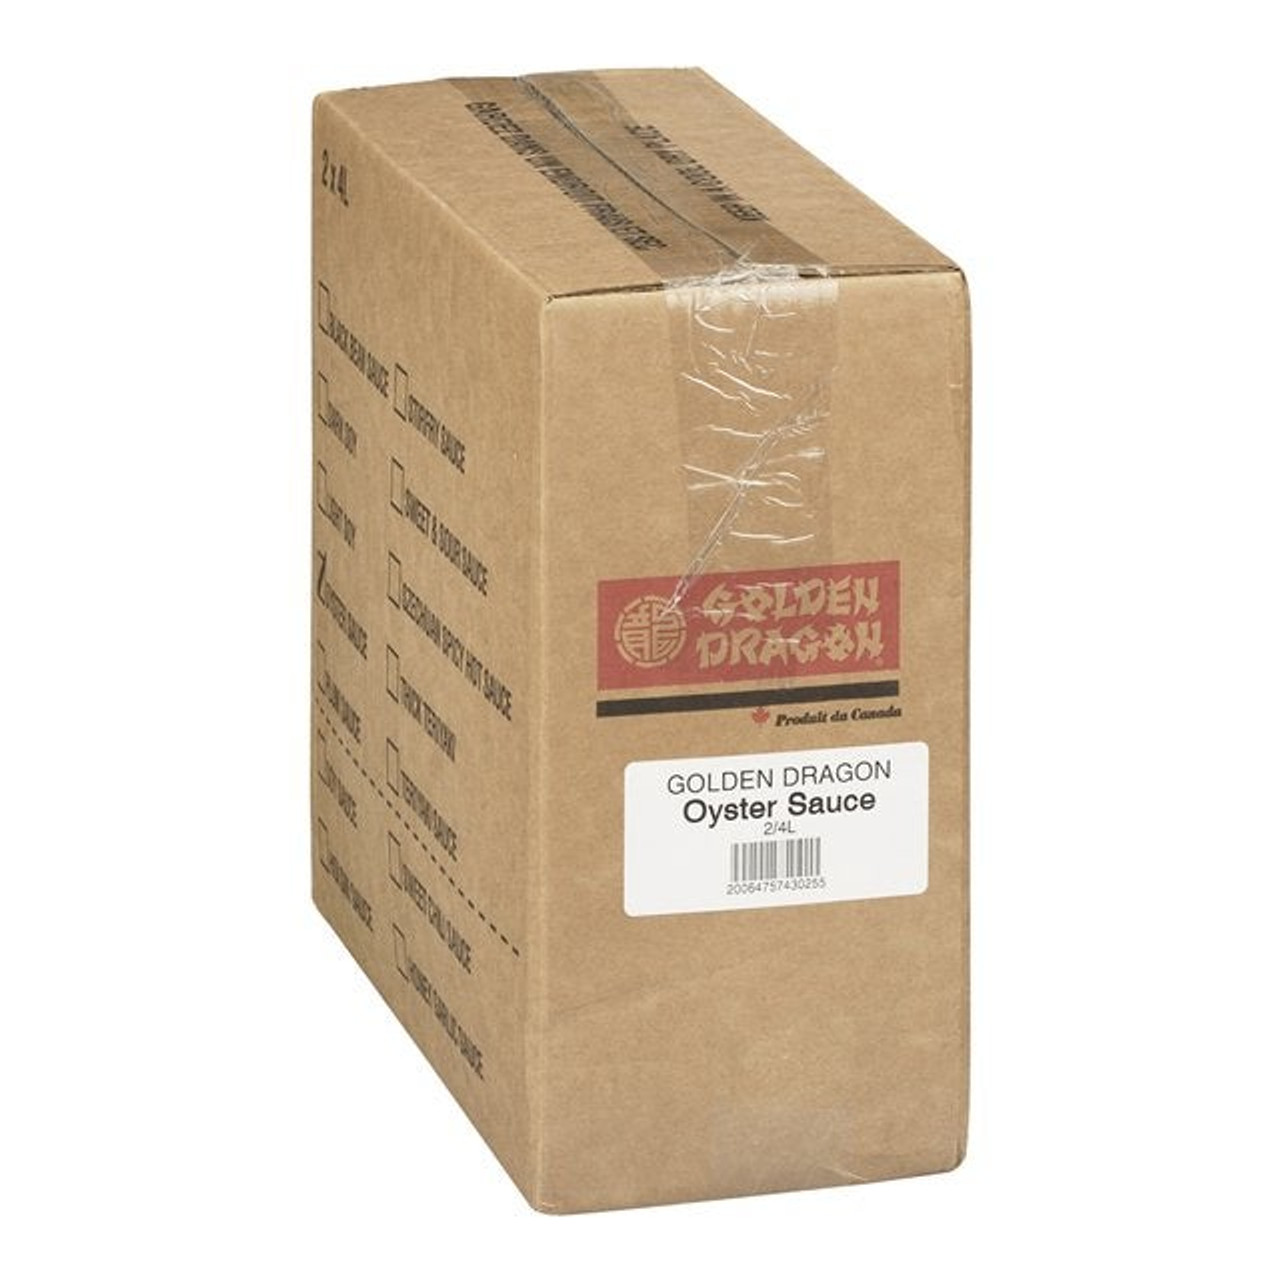 Golden Dragon Oyster Sauce, Trans Fat Compliant | 4L/Unit, 2 Units/Case